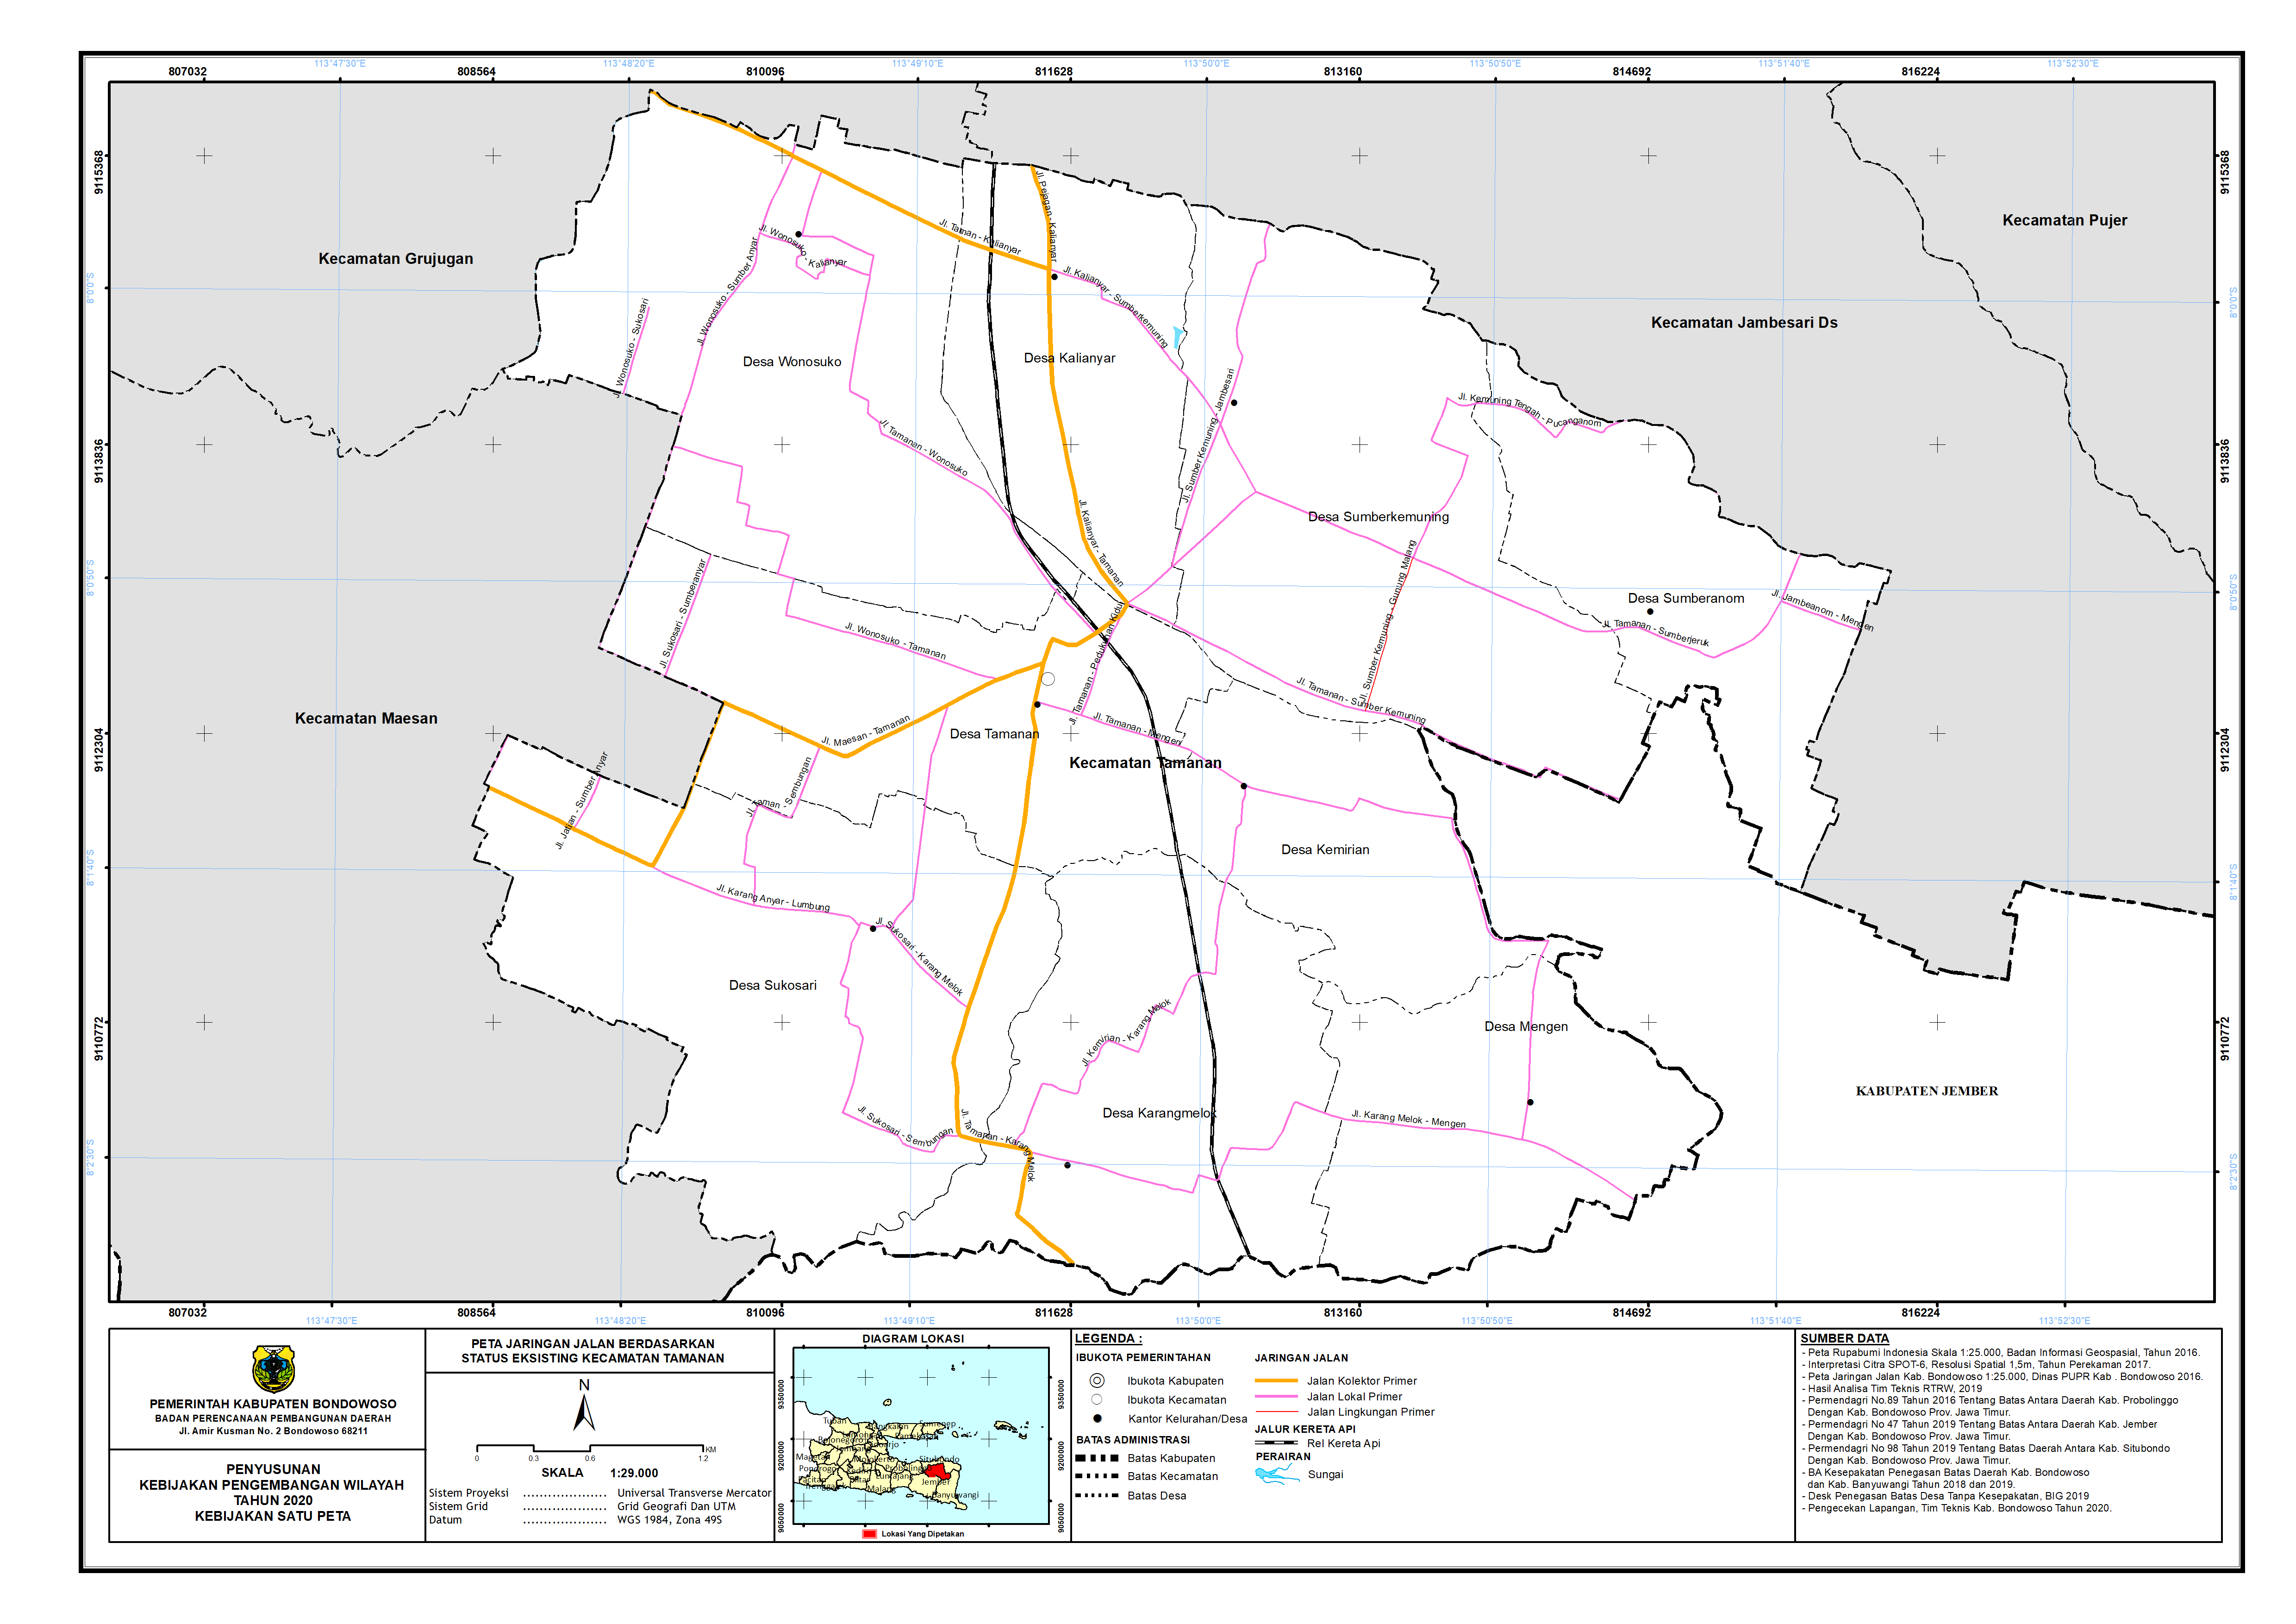 Peta Jaringan Jalan Berdasarkan Status Eksisting Kecamatan Tamanan.png